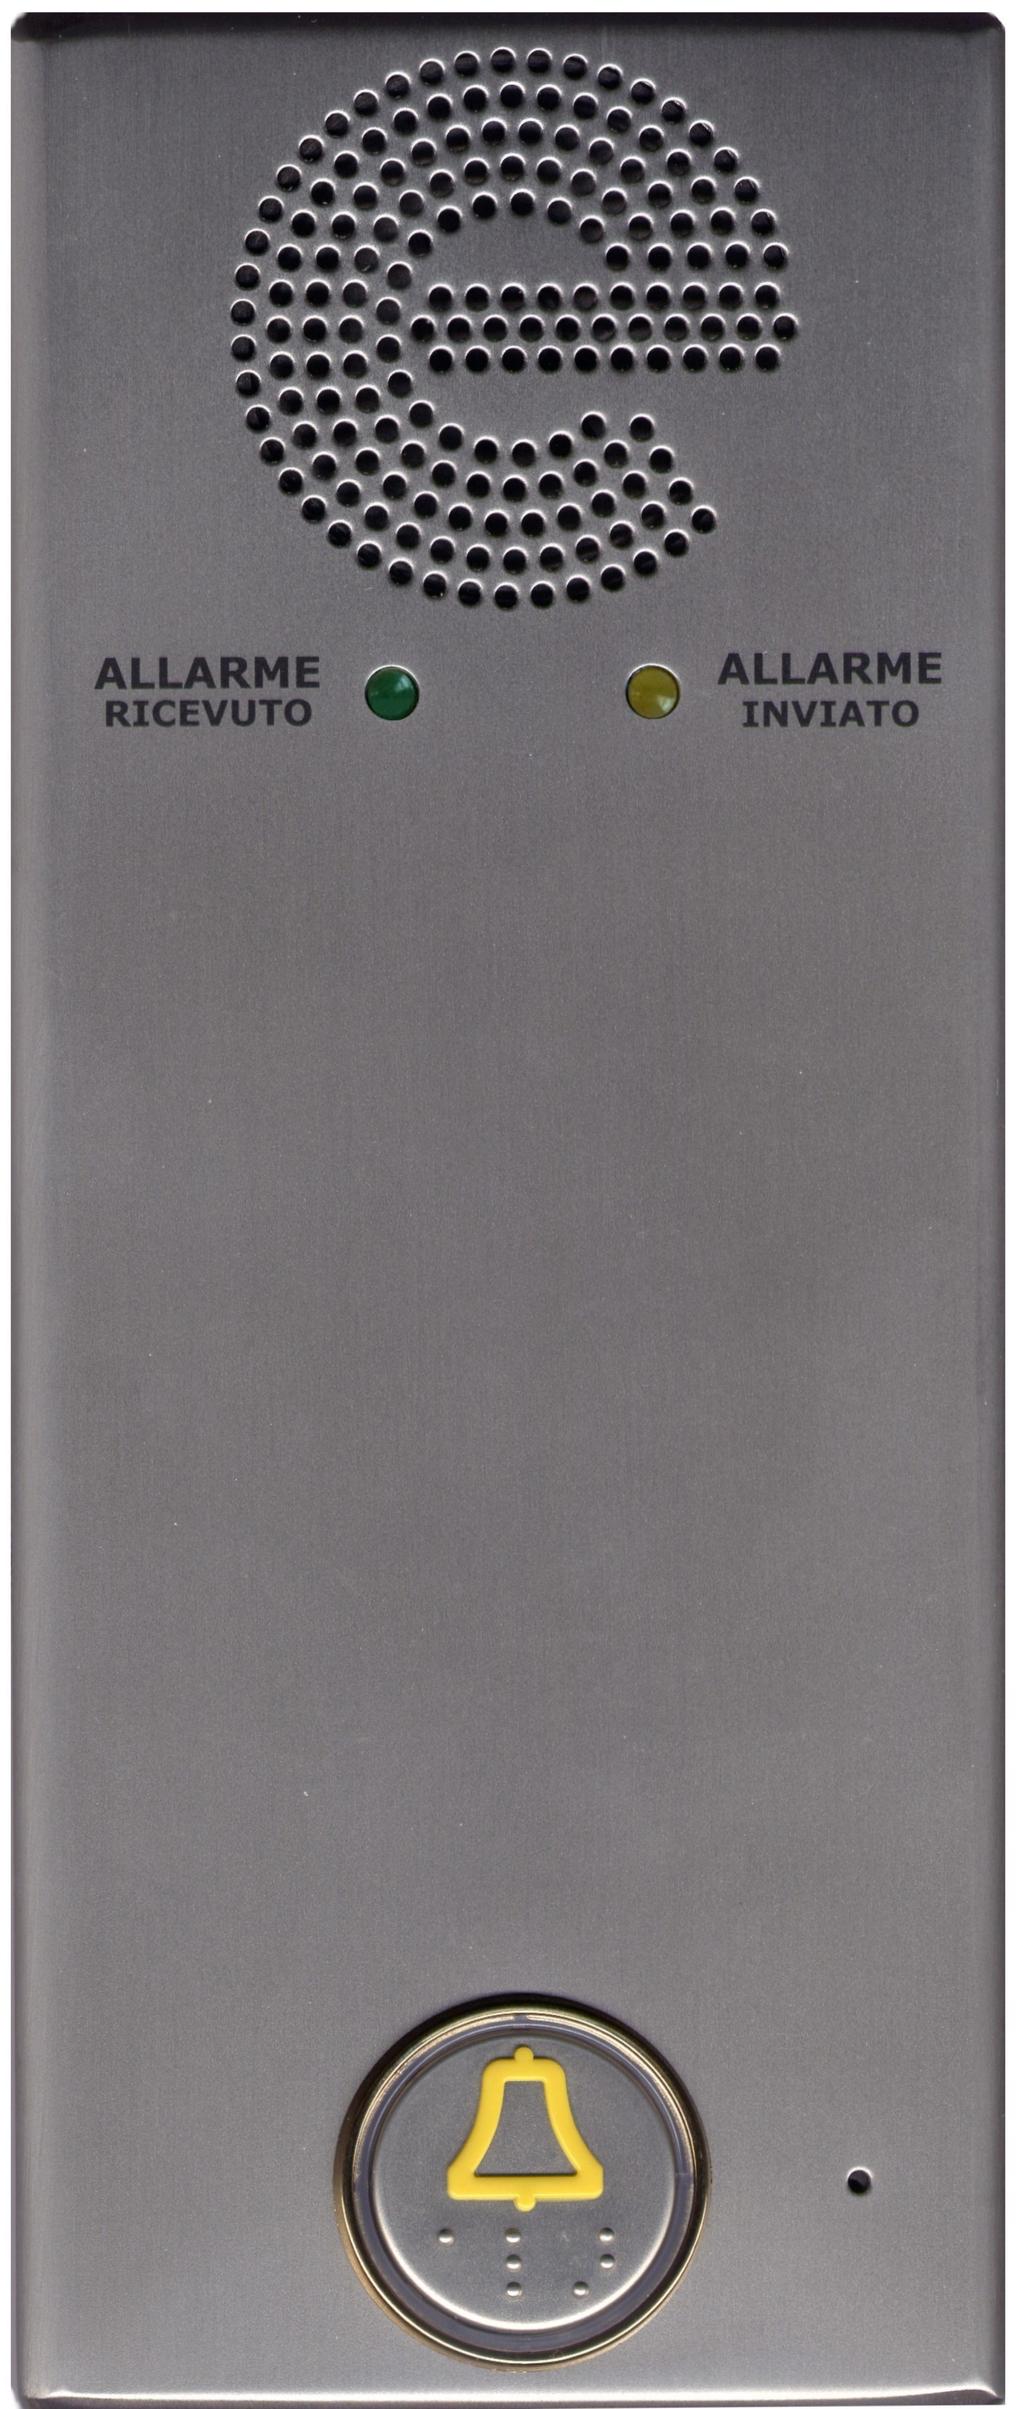 TELEVIVAVOCE Televivavoce è un telefono vivavoce automatico che permette la comunicazione vocale con un numero programmabile alla sola pressione del relativo pulsante.